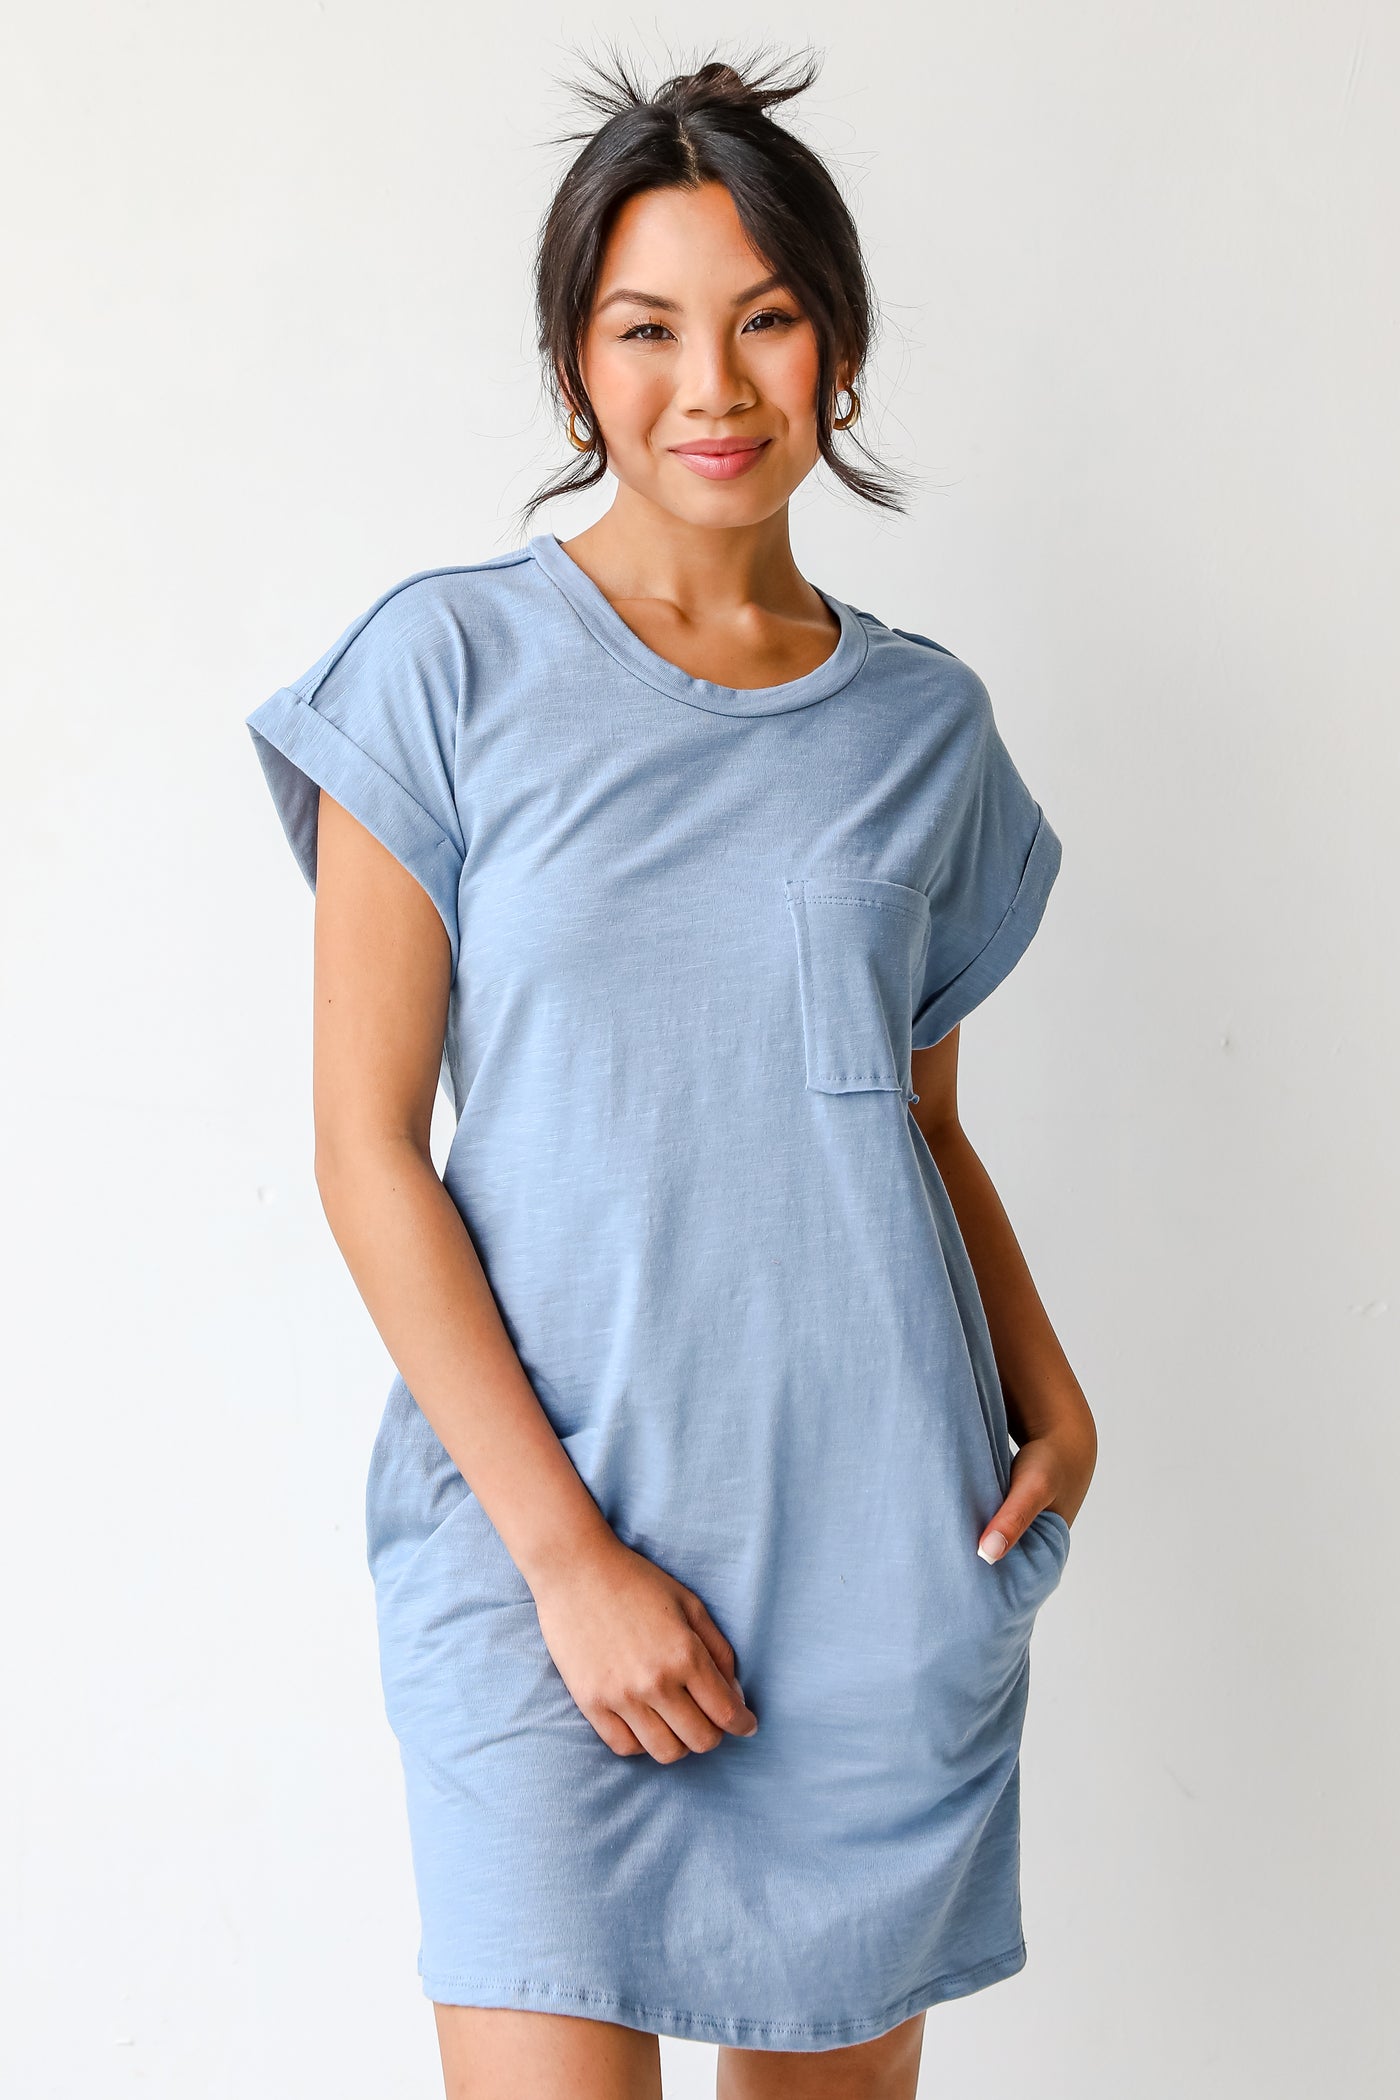 T-Shirt Dress in light blue on model